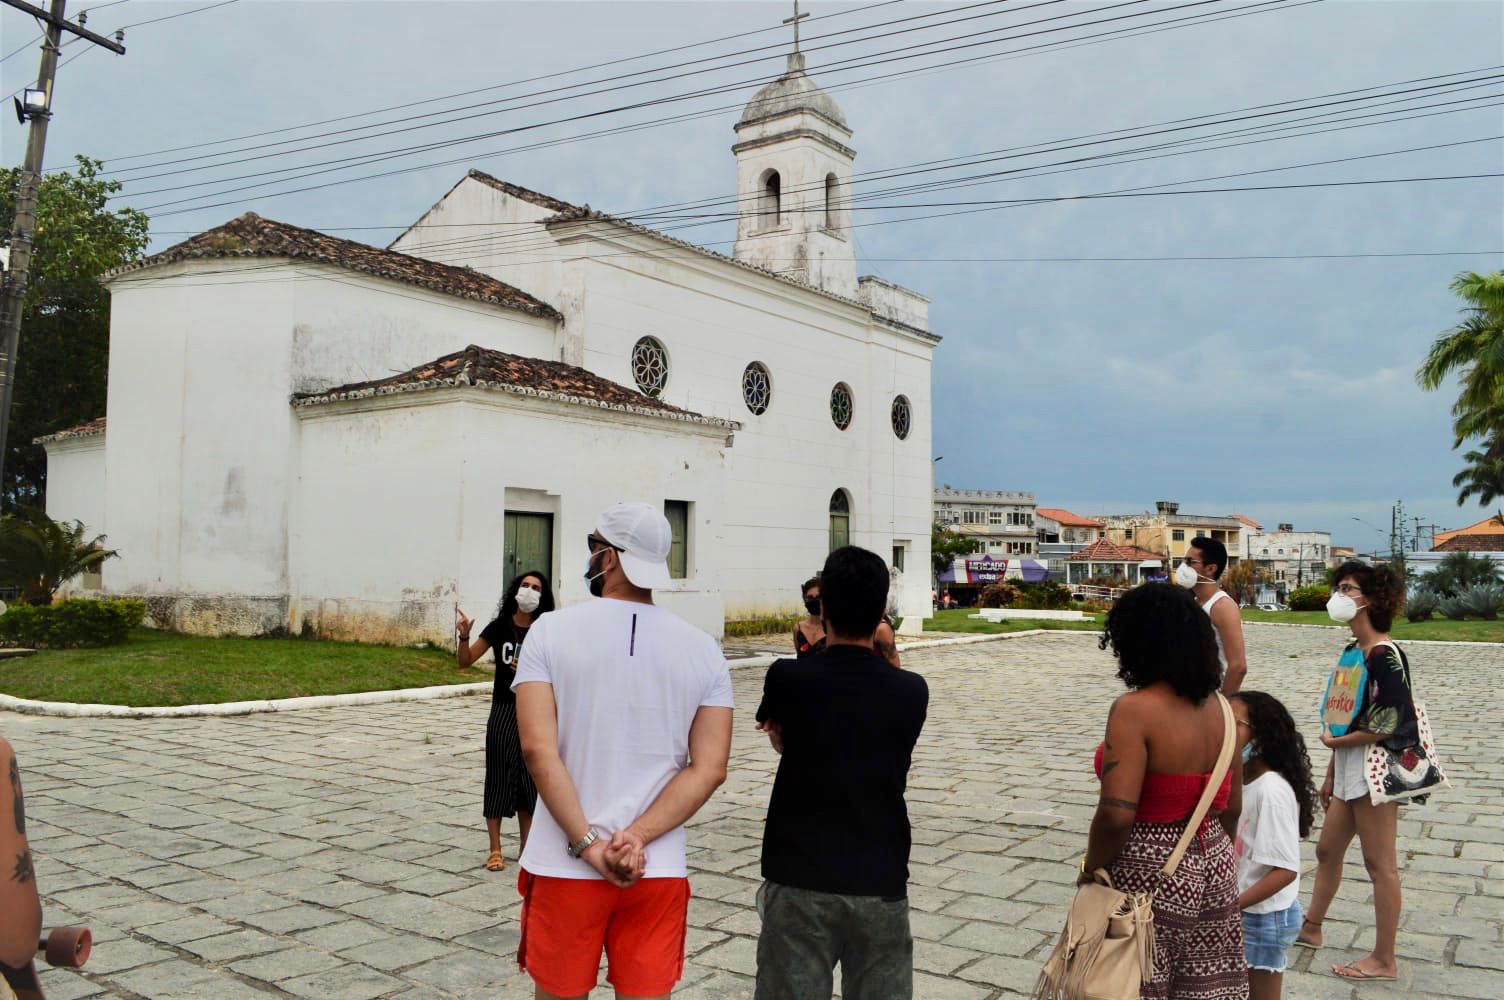 Passeio guiado apresenta pontos turísticos e monumentos históricos de São Pedro da Aldeia